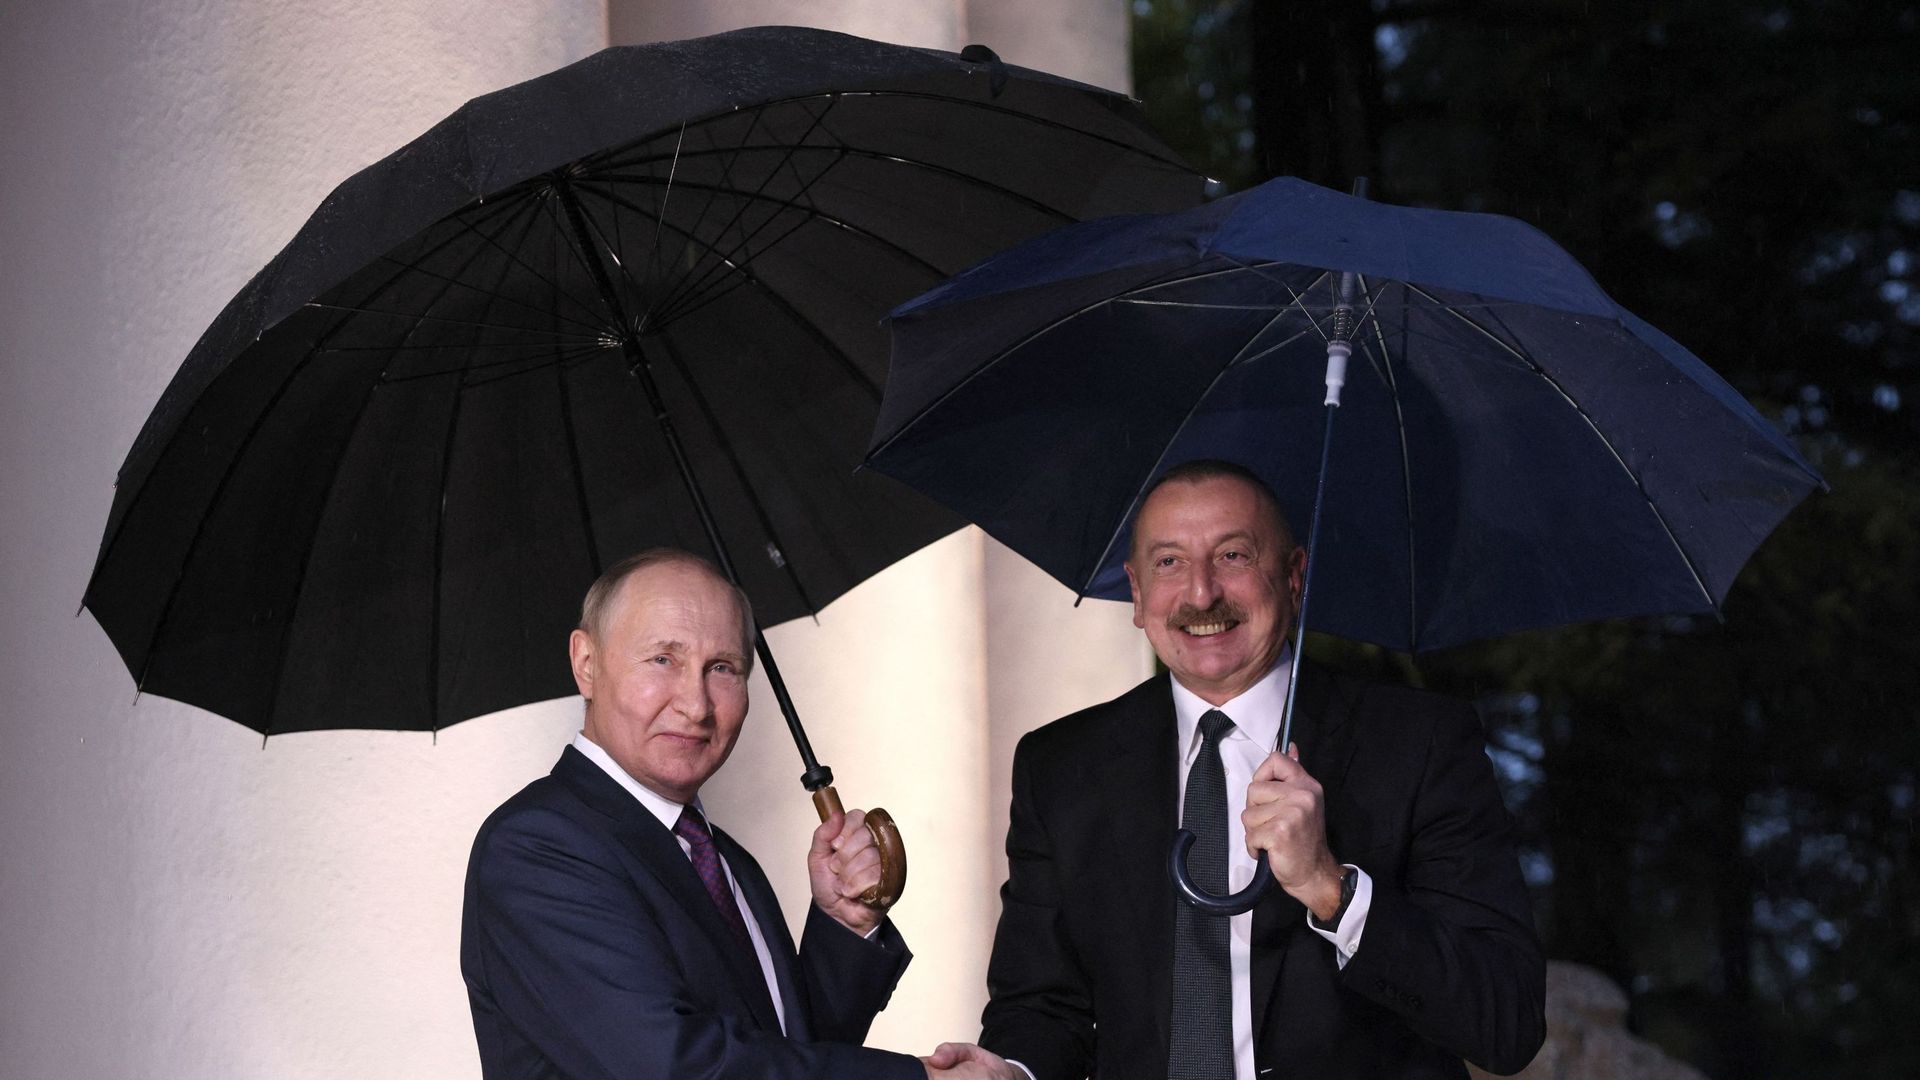 Le président russe Vladimir Poutine accueille le président azéri Ilham Aliyev pour des discussions avant une réunion du président russe avec les dirigeants de l’Arménie et de l’Azerbaïdjan dans la station balnéaire de la mer Noire de Sochi, le 31 octobre.